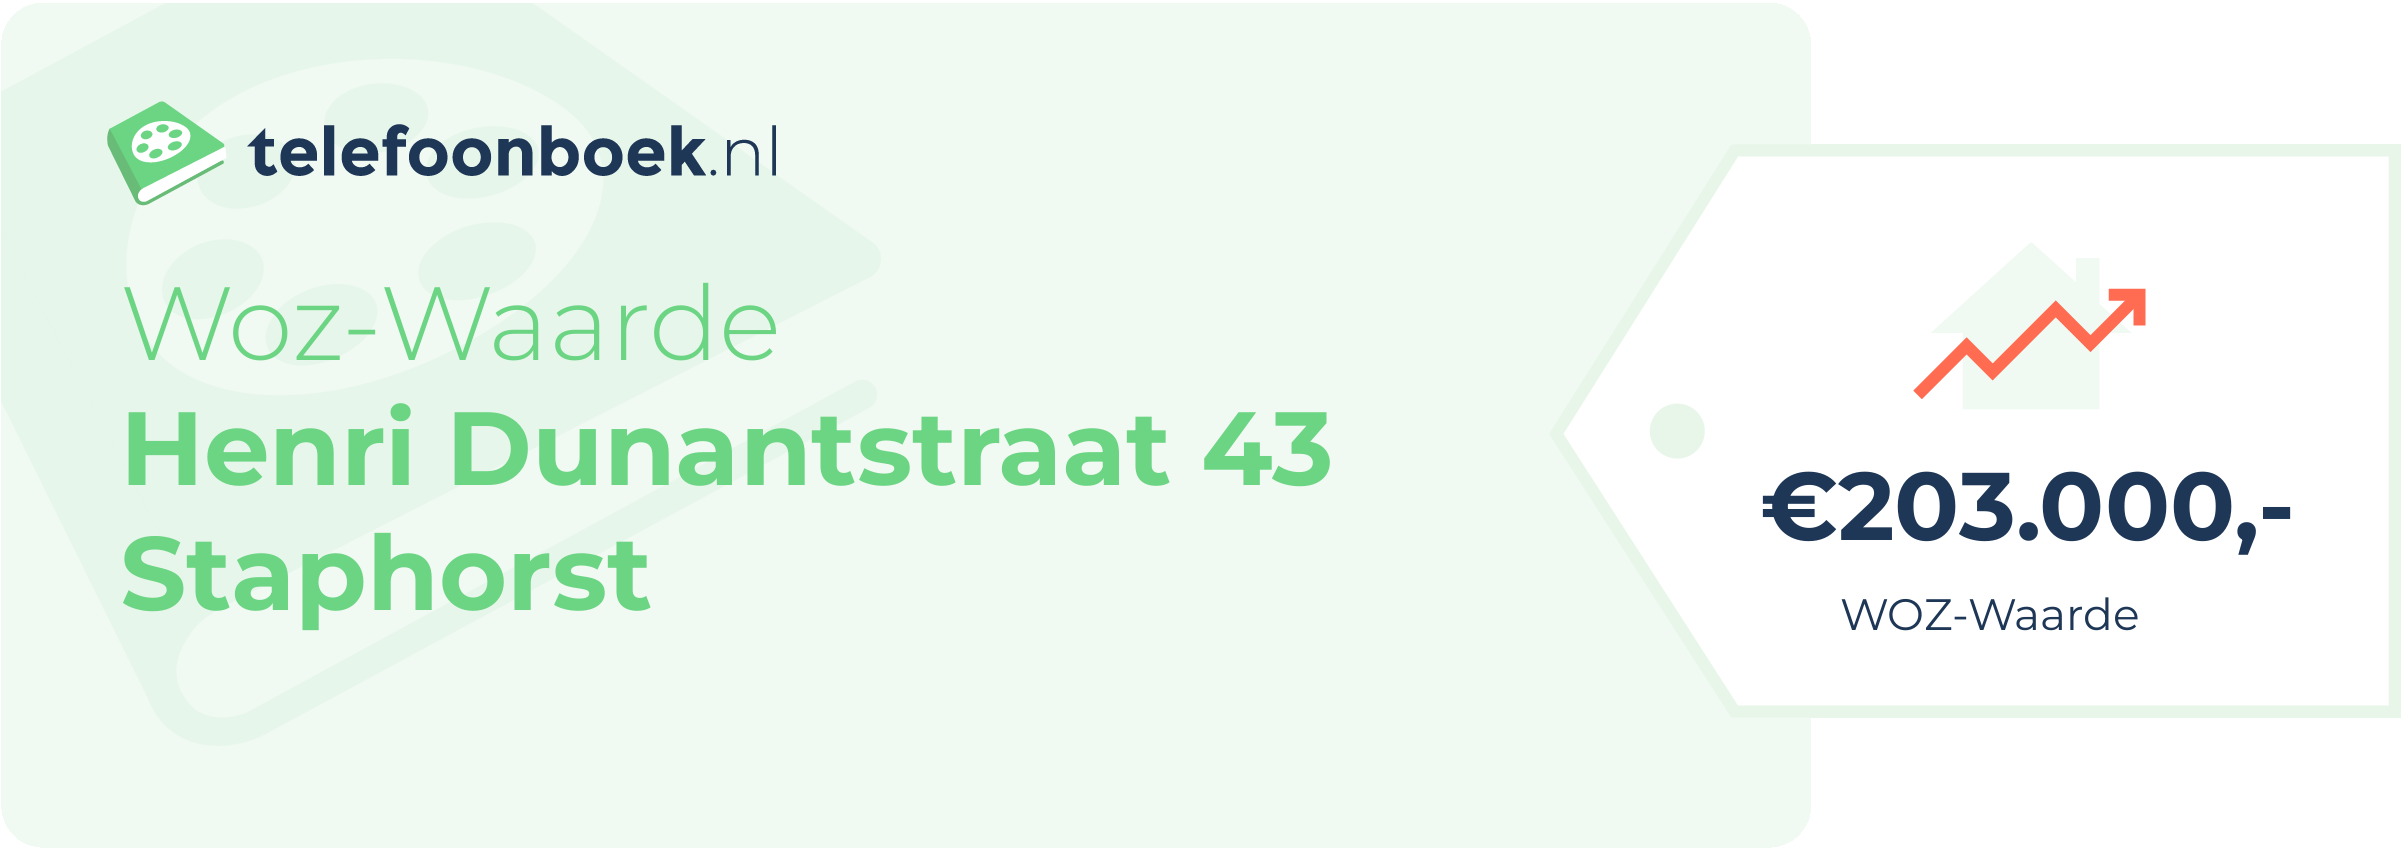 WOZ-waarde Henri Dunantstraat 43 Staphorst